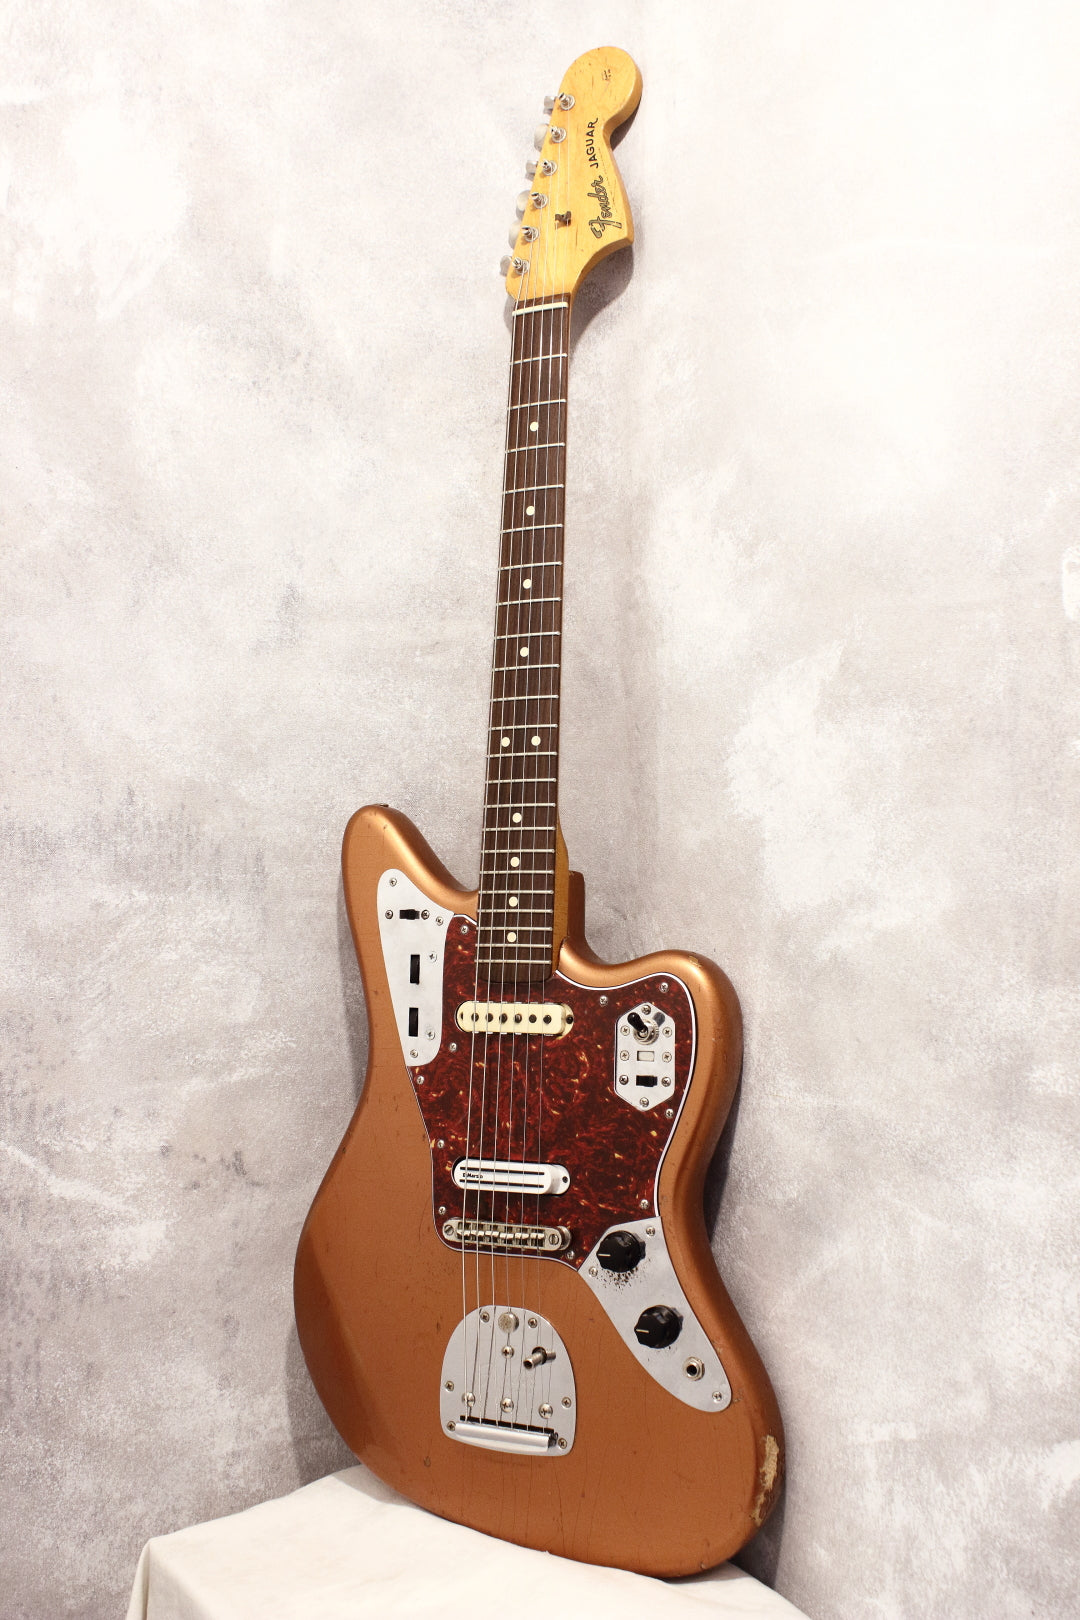 Fender Jaguar '62 American Vintage Electric Guitar w/Hard Case F/S